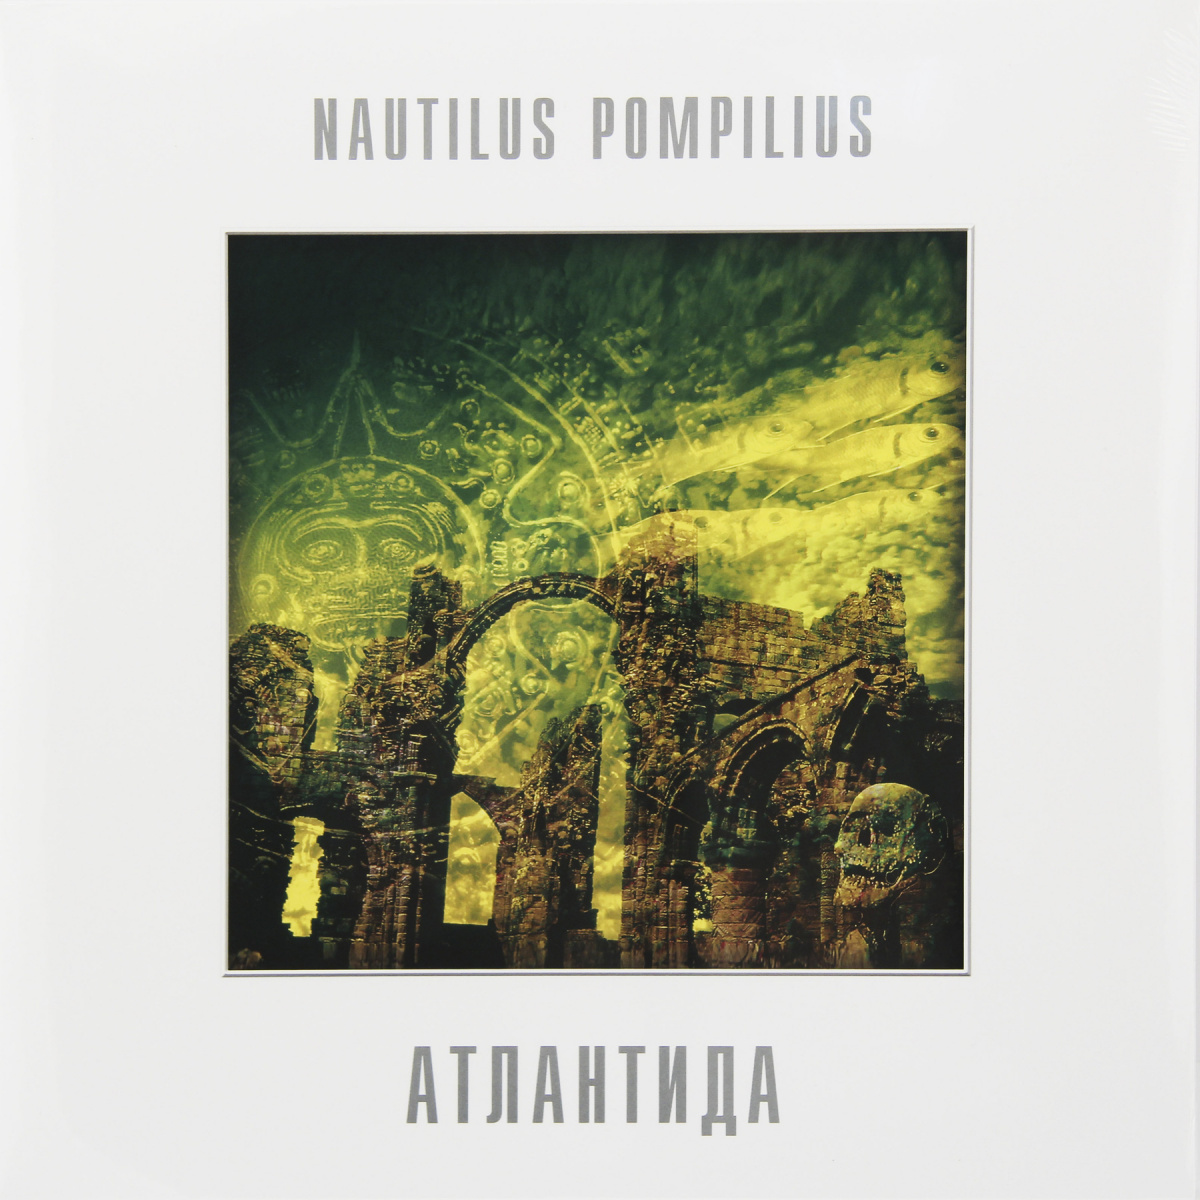 Nautilus Pompilius (Vyacheslav Butusov) - Атлантида piano sheet music